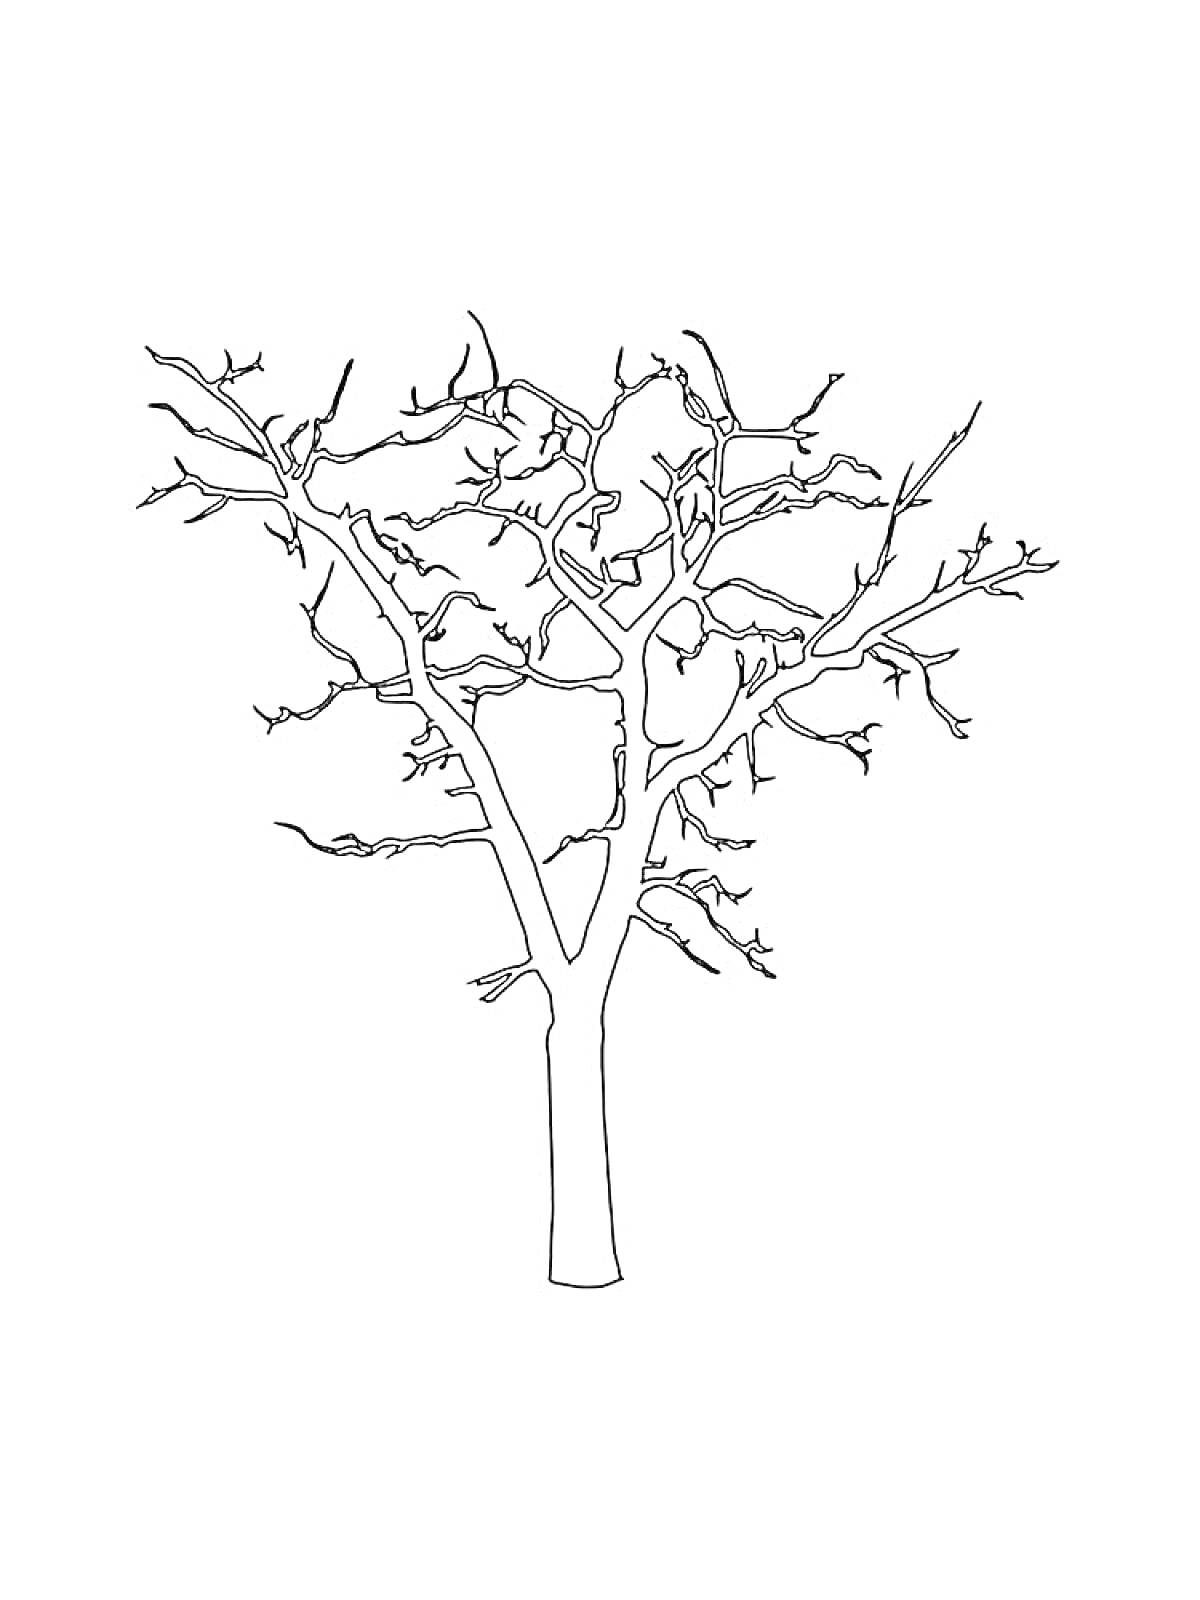 Раскраска Раскраска дерева без листьев для детей, дерево с ветками